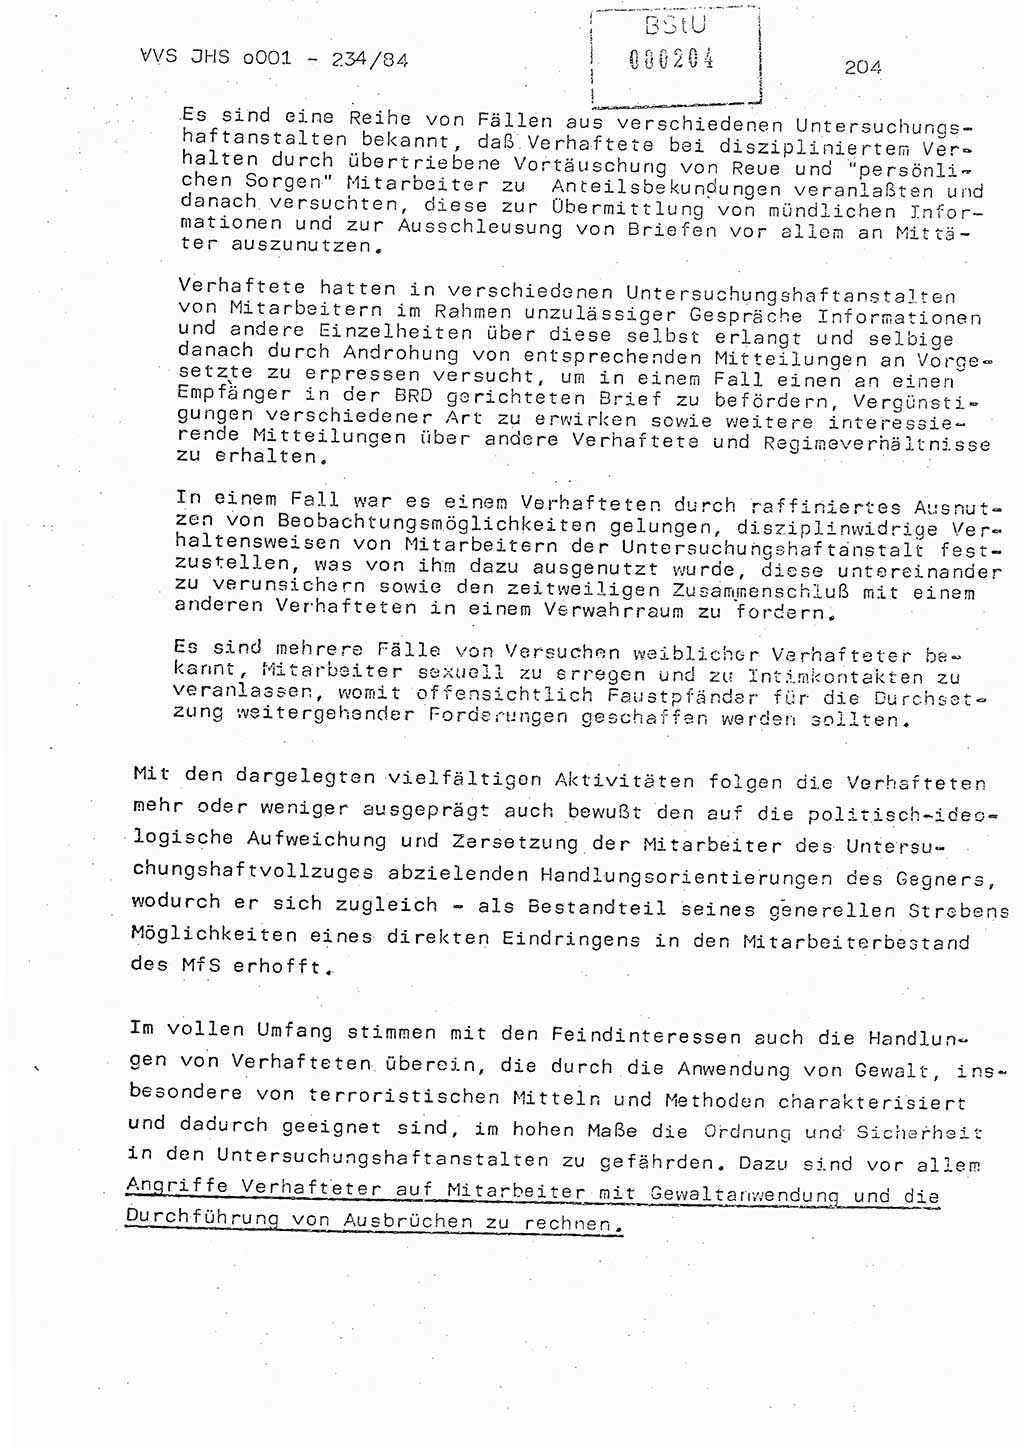 Dissertation Oberst Siegfried Rataizick (Abt. ⅩⅣ), Oberstleutnant Volkmar Heinz (Abt. ⅩⅣ), Oberstleutnant Werner Stein (HA Ⅸ), Hauptmann Heinz Conrad (JHS), Ministerium für Staatssicherheit (MfS) [Deutsche Demokratische Republik (DDR)], Juristische Hochschule (JHS), Vertrauliche Verschlußsache (VVS) o001-234/84, Potsdam 1984, Seite 204 (Diss. MfS DDR JHS VVS o001-234/84 1984, S. 204)